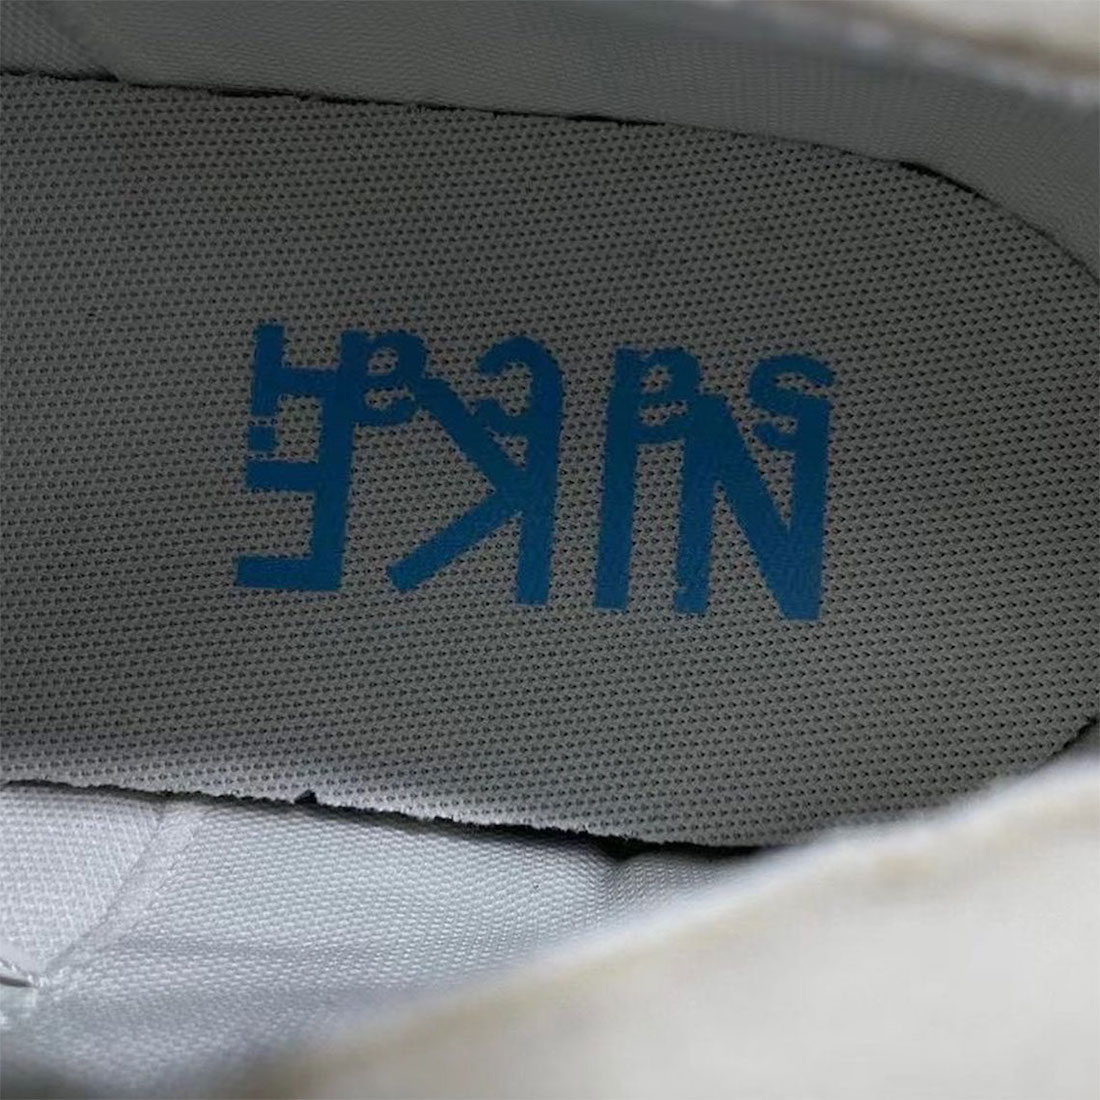 Sacai Nike Blazer Low White Grey DM6443-100 Release Date